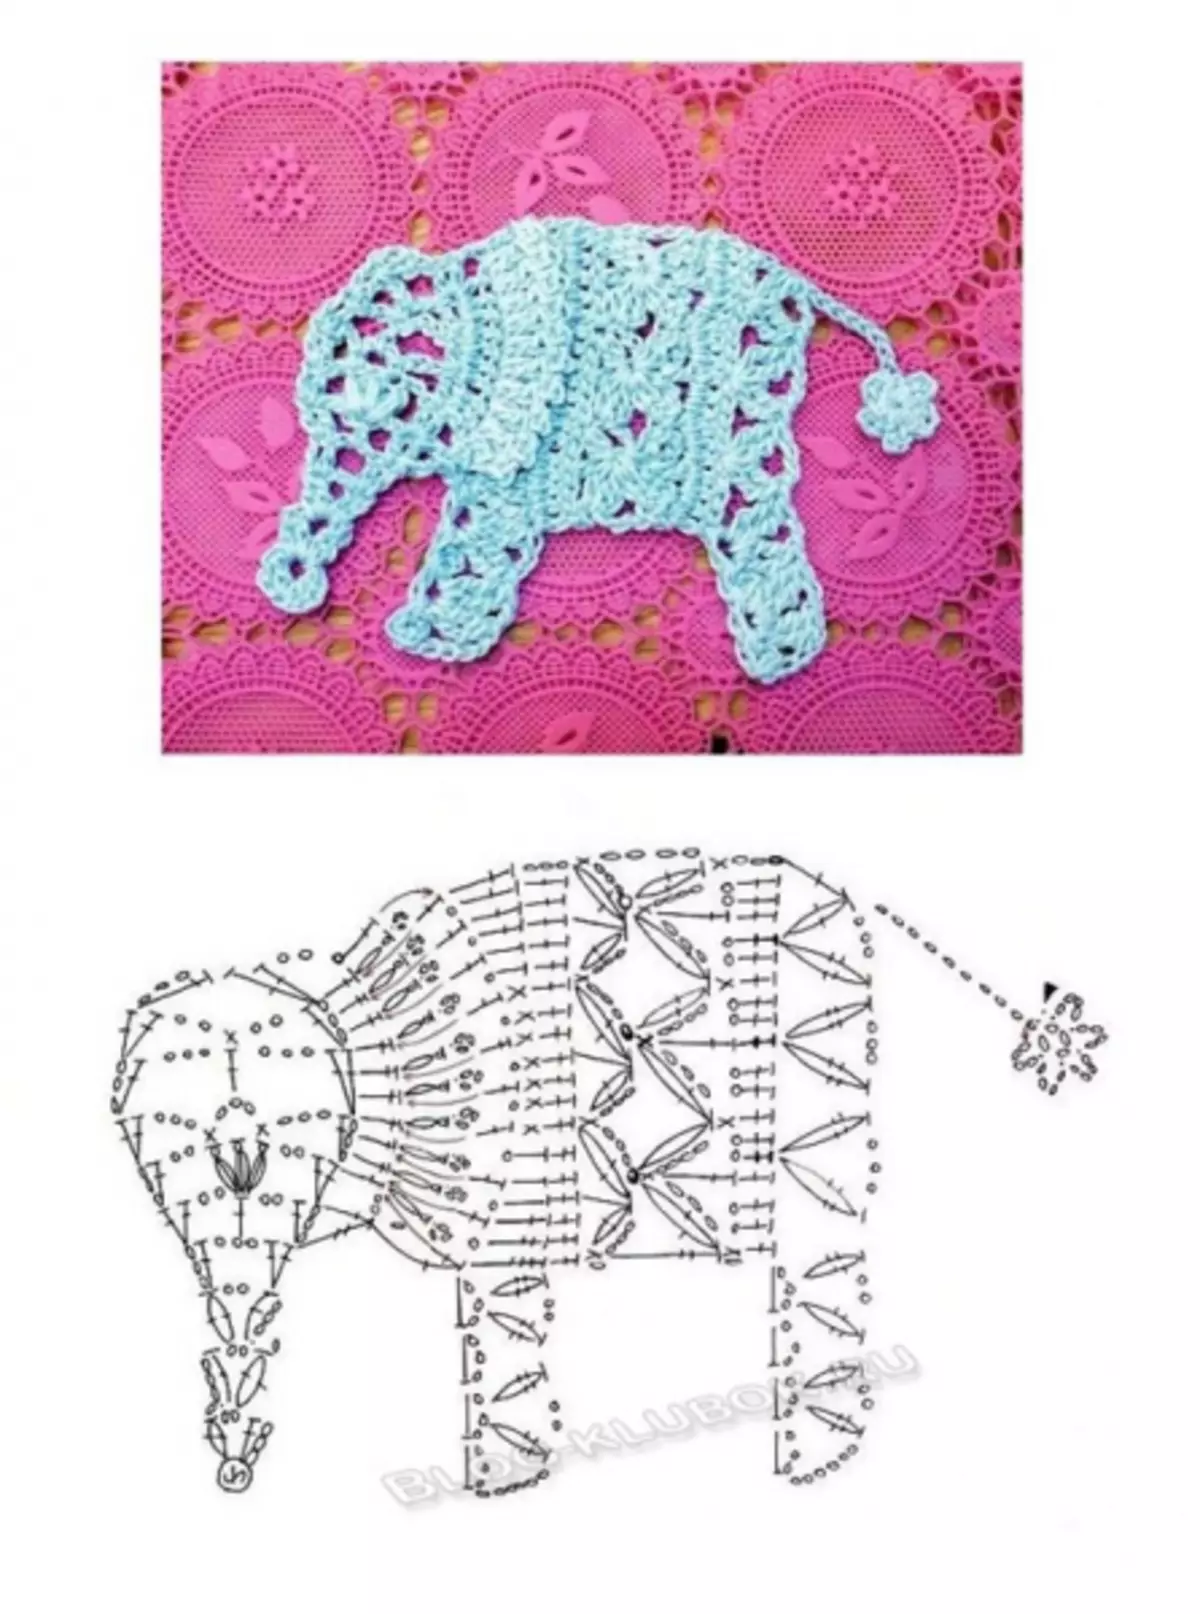 Crochet Appliques: Đề án trang trí quần áo trẻ em với hình ảnh và video